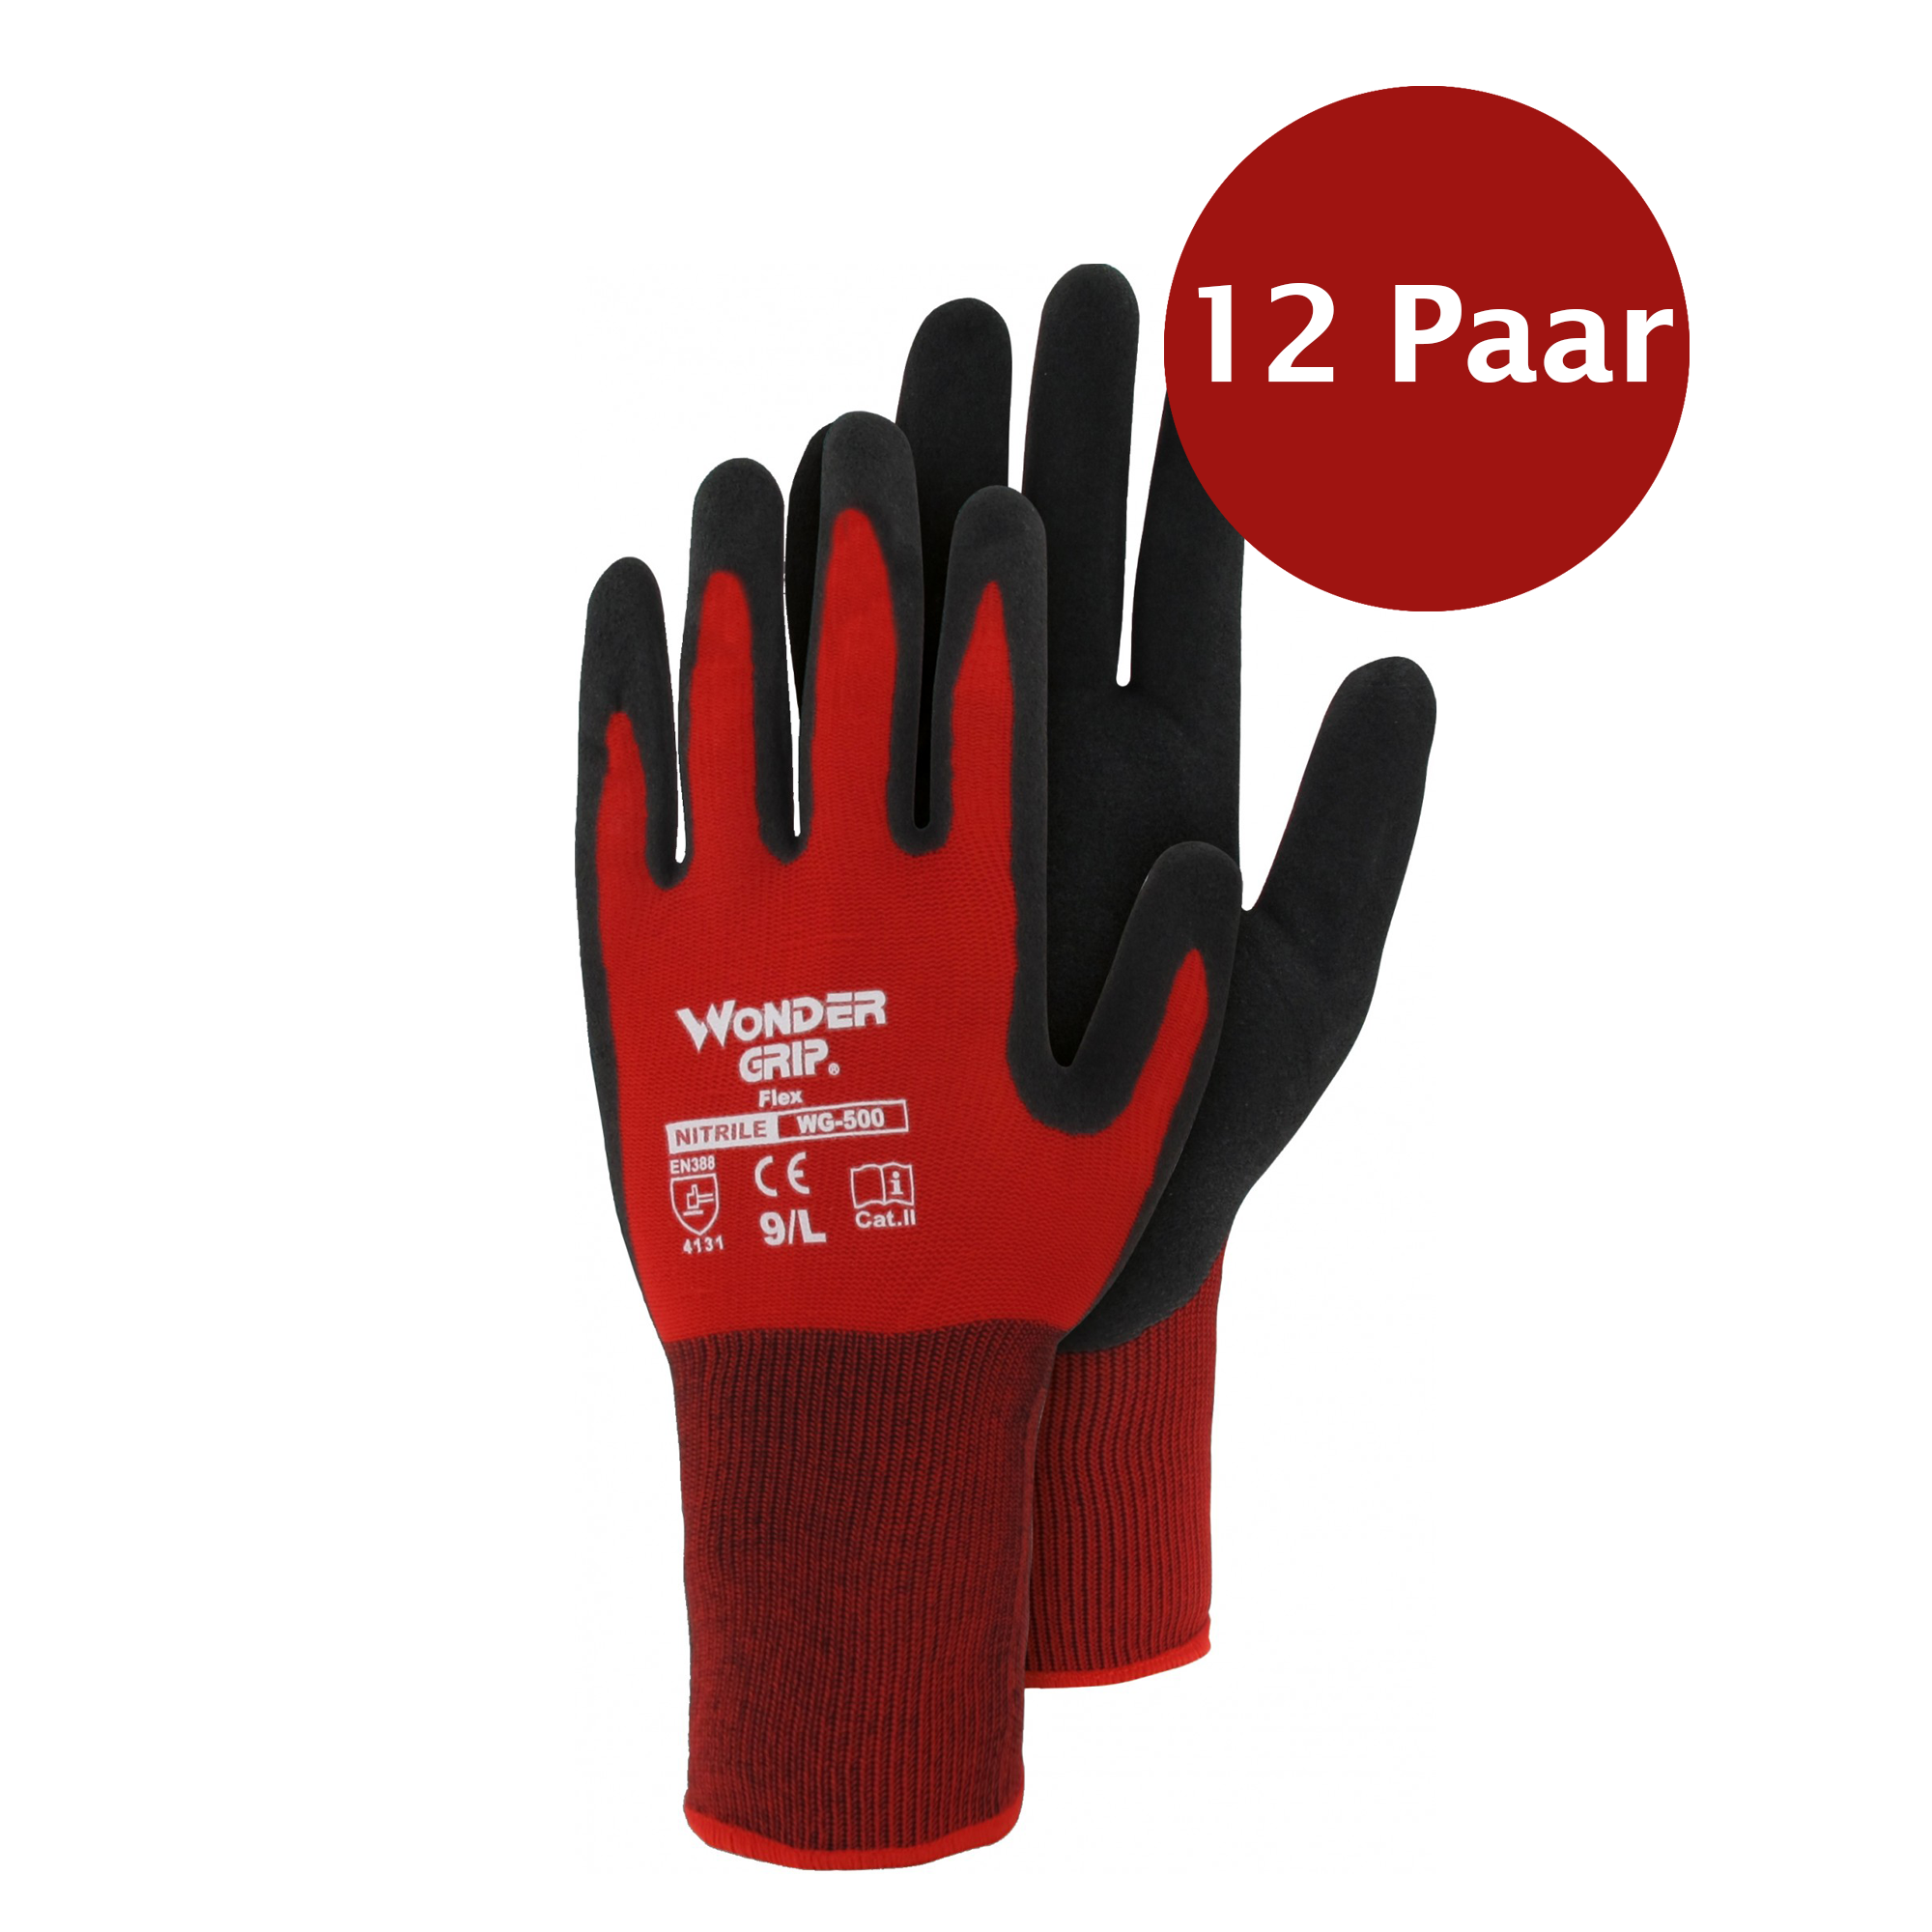 TRIUSO Handschuhe Wonder Grip - Flex 500 mit Nitril, rot - 12 Paar